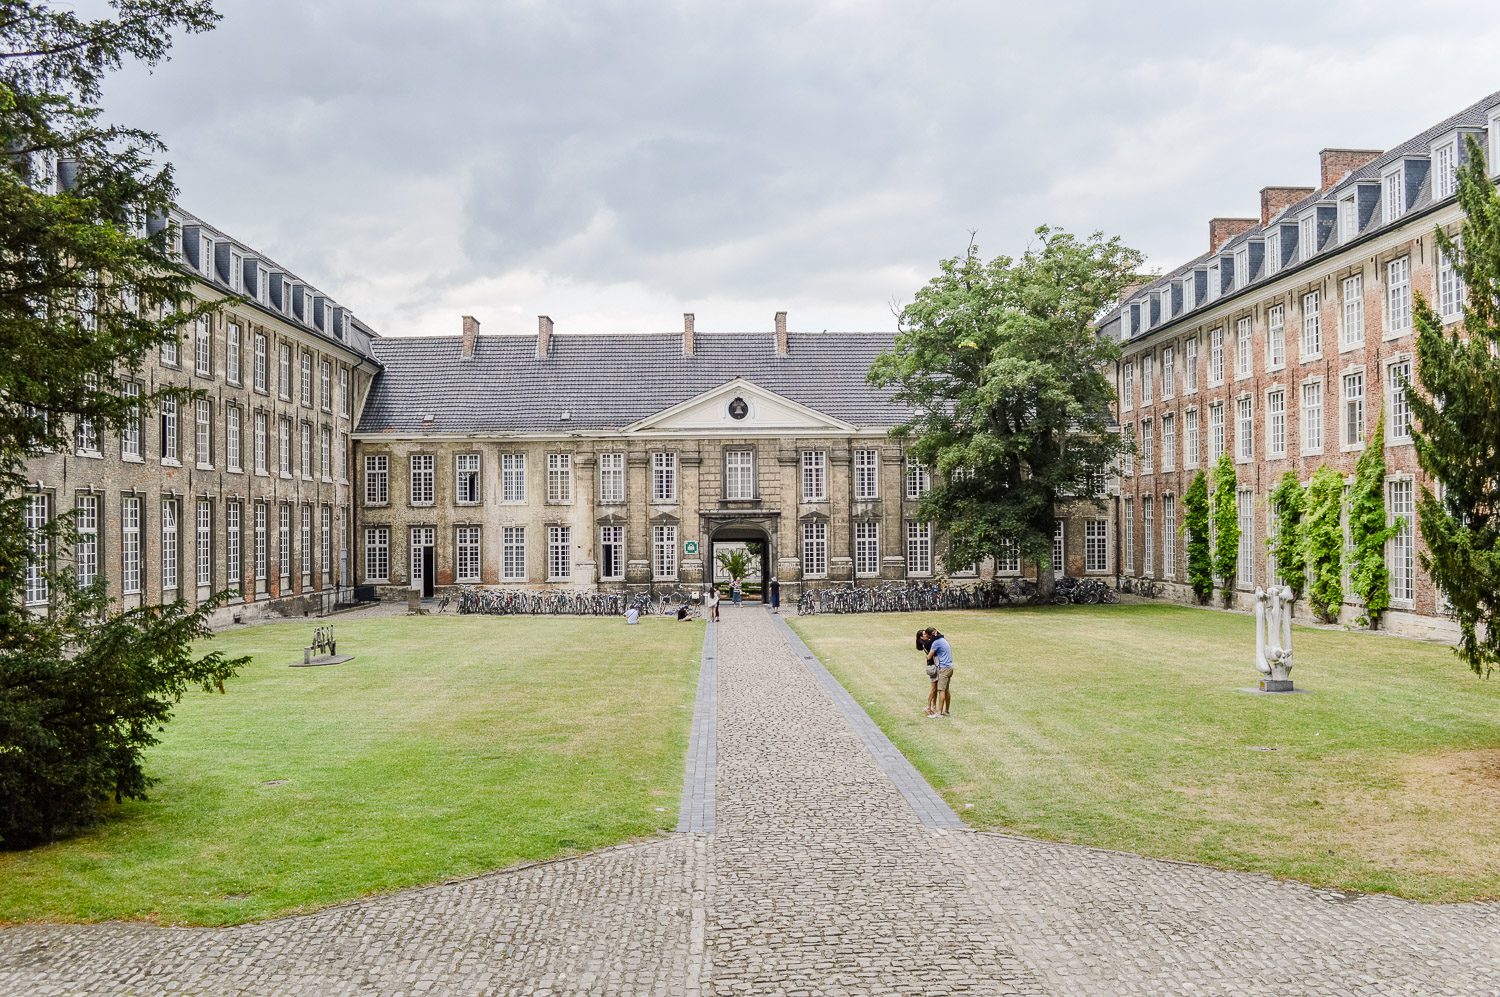 Universiteit van Leuven